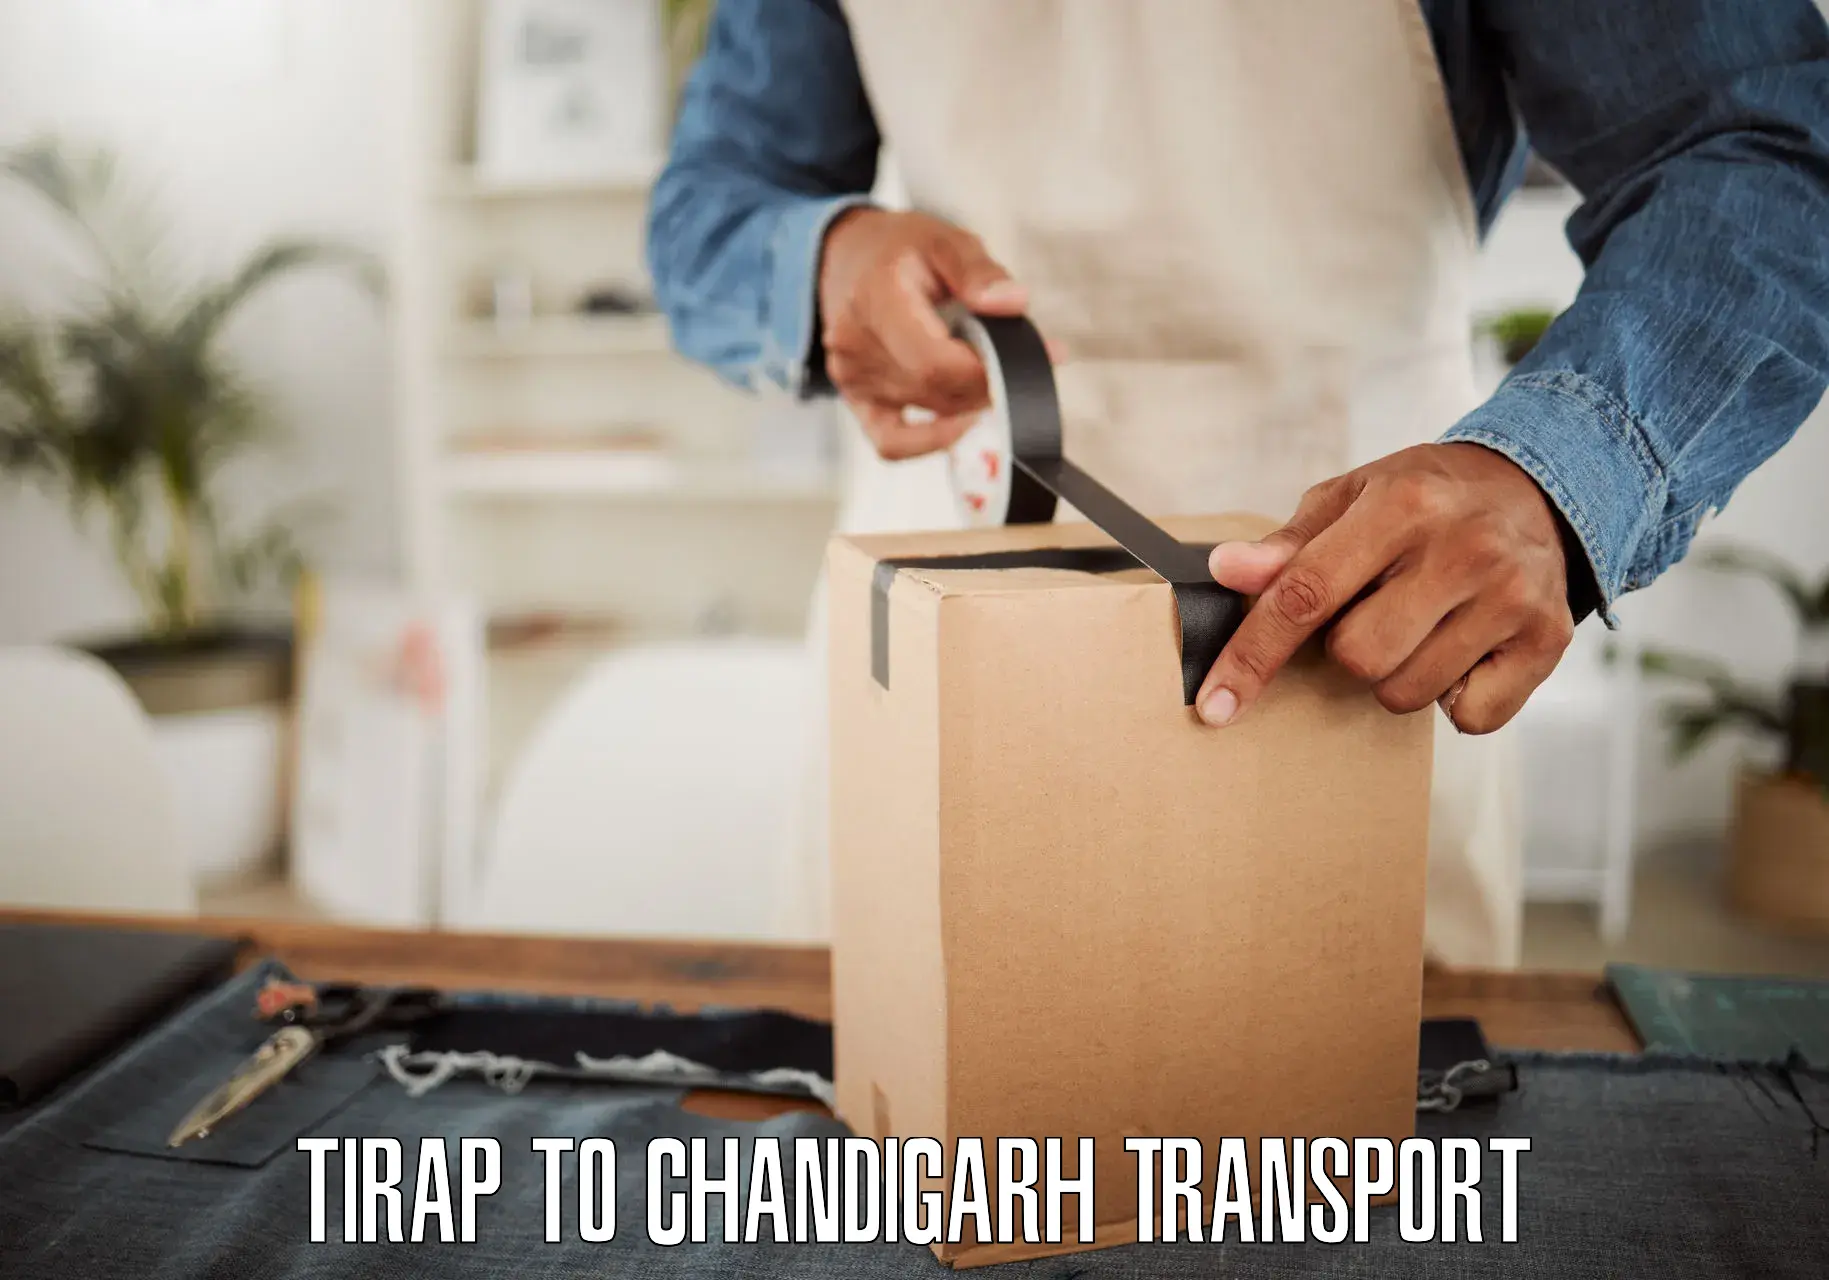 Online transport service Tirap to Chandigarh